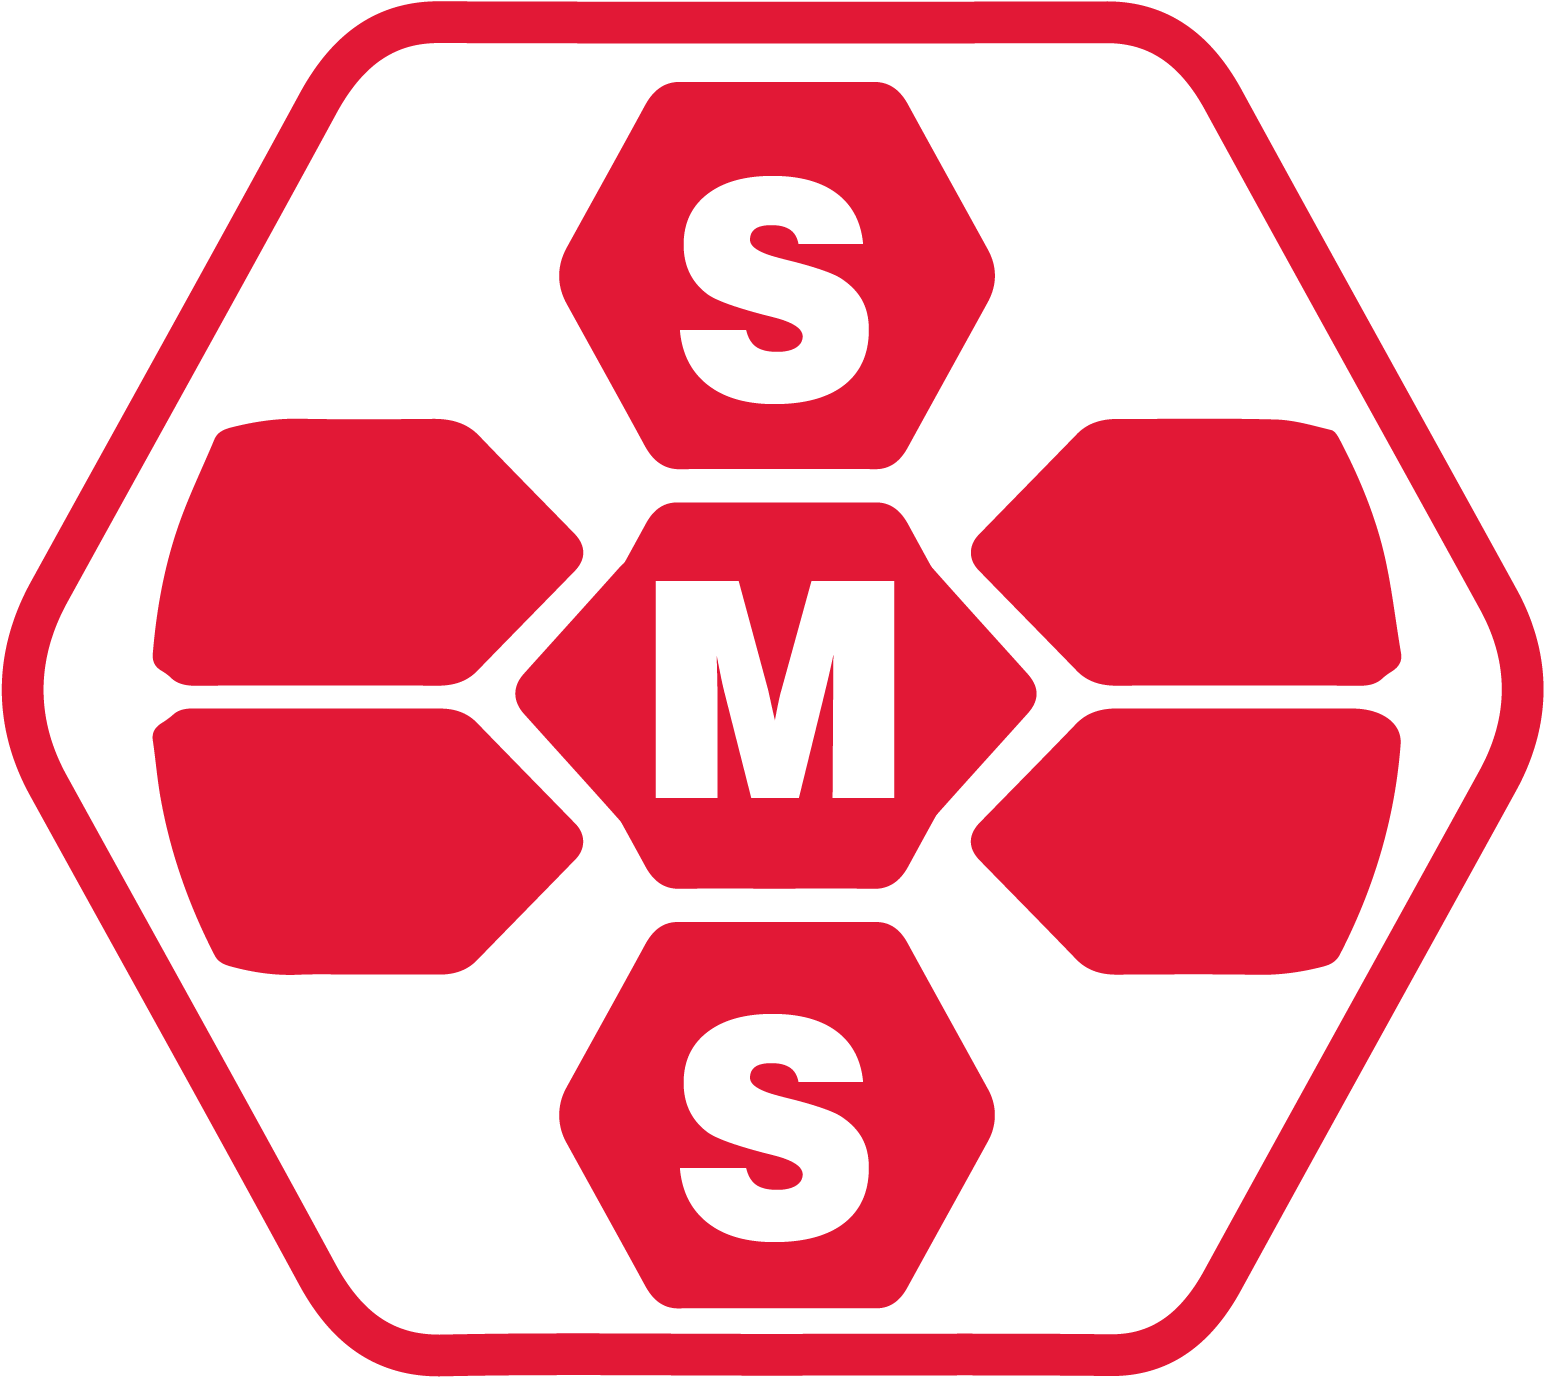 Student Medic Service Is A Volunteer Medic Service - Emblem (1548x1385)